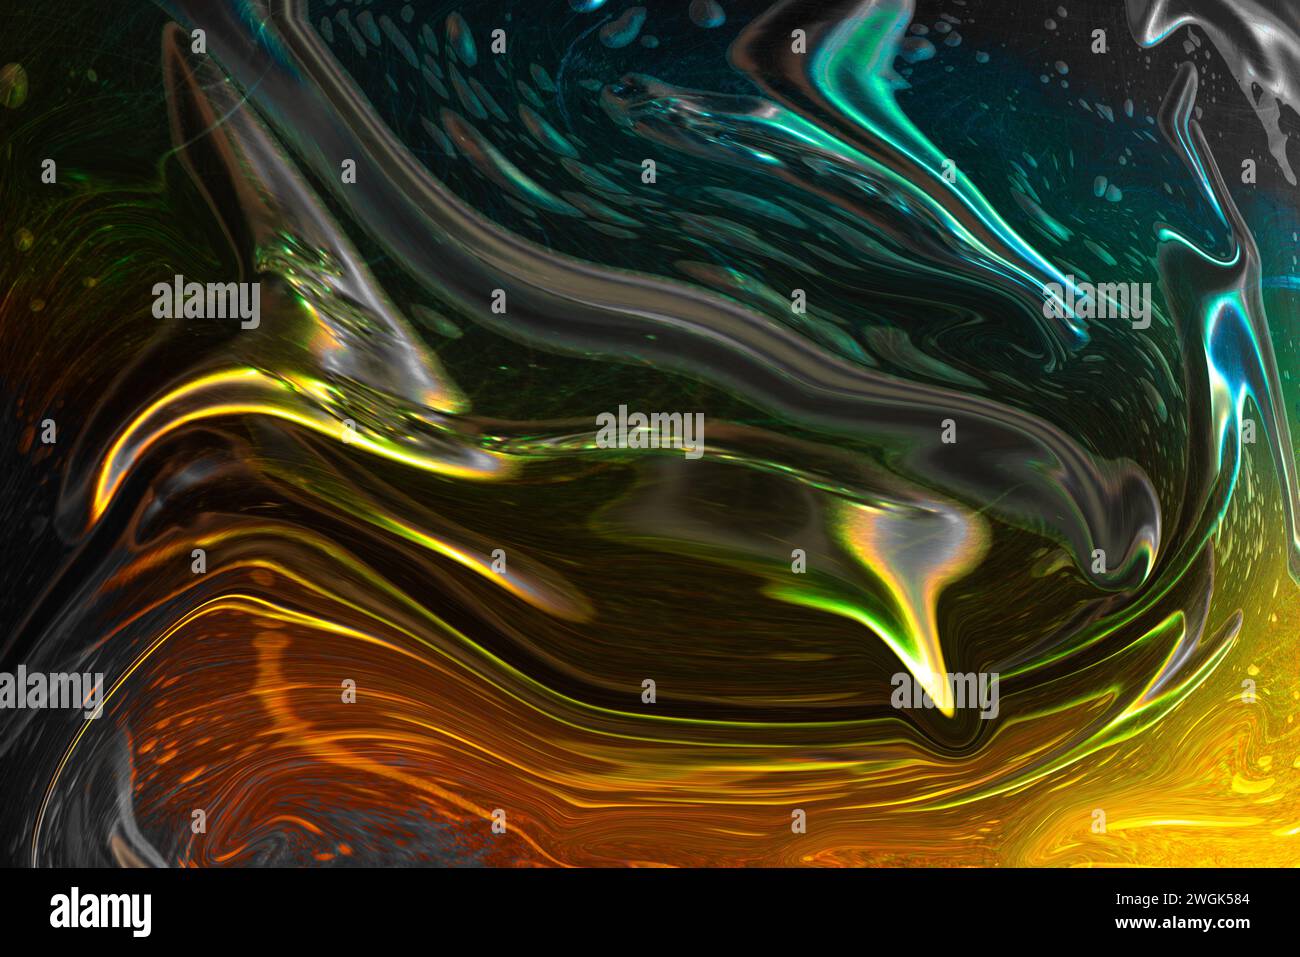 Immagine astratta colorata di una bolla avvolgente con la bolla e i segni di graffio sotto la luce colorata Foto Stock